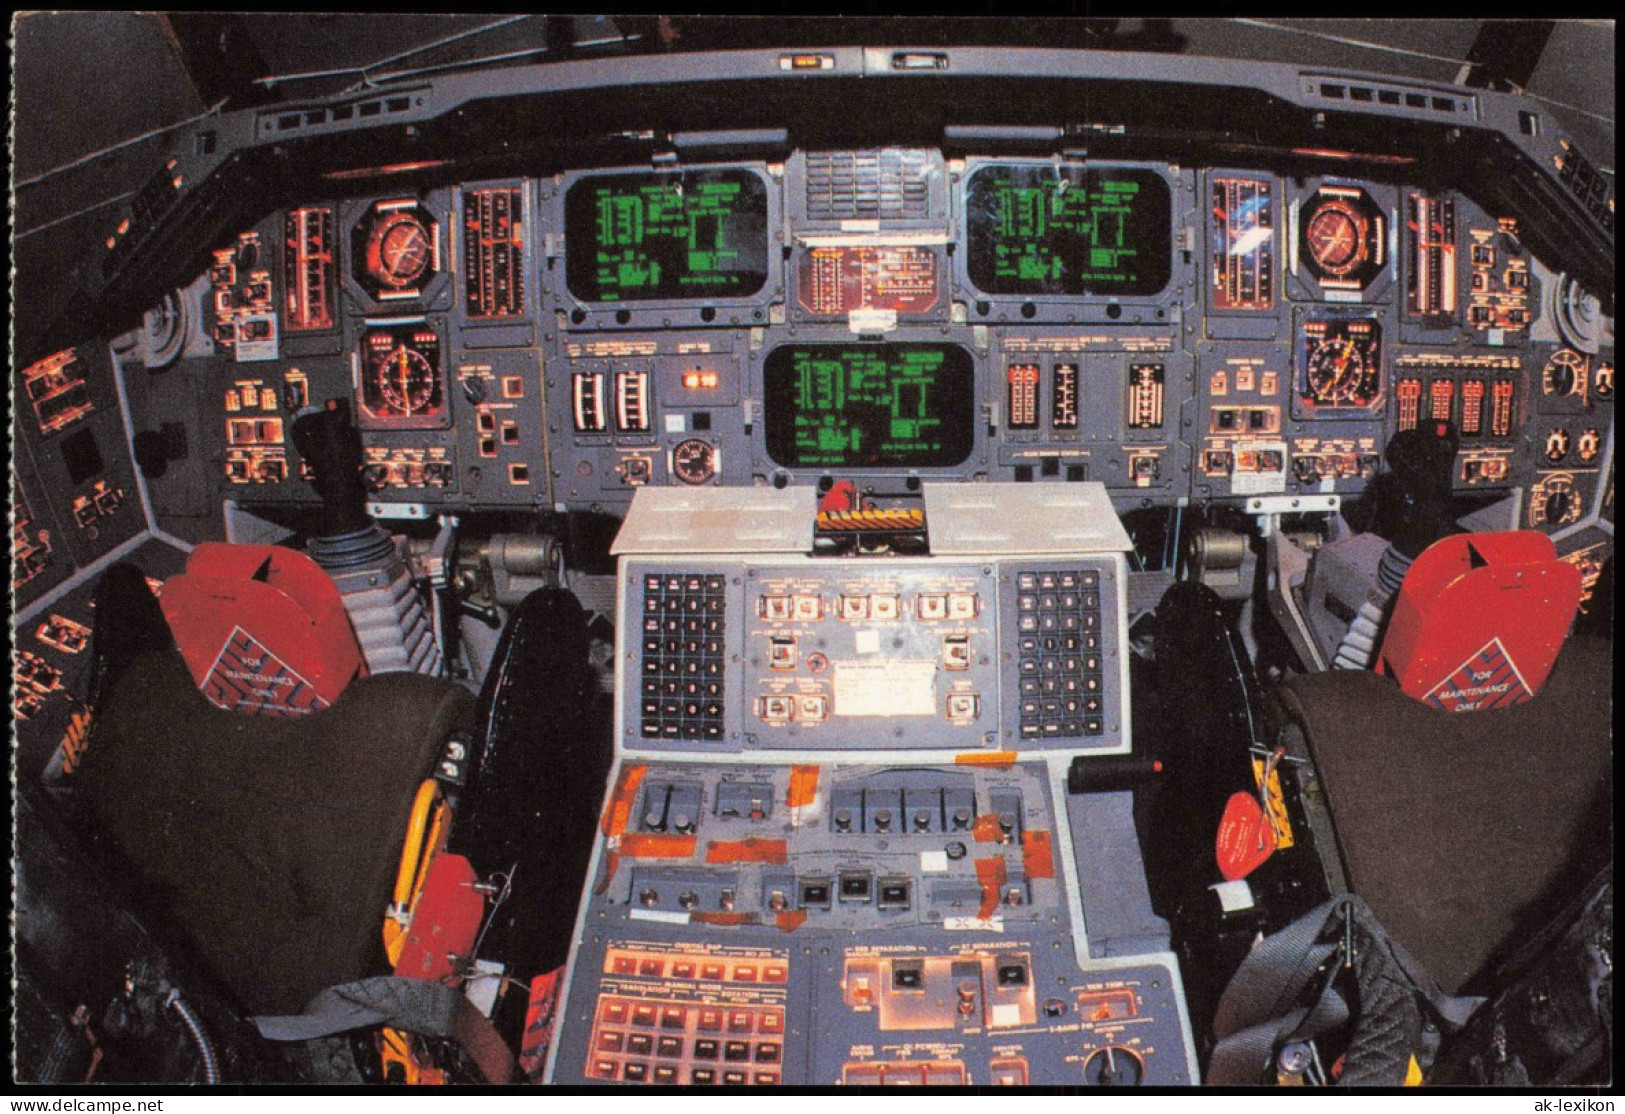 Flugwesen Raumfahrt INTERIOR VIEW OF THE SPACE SHUTTLE FLIGHT DECK 1980 - Spazio